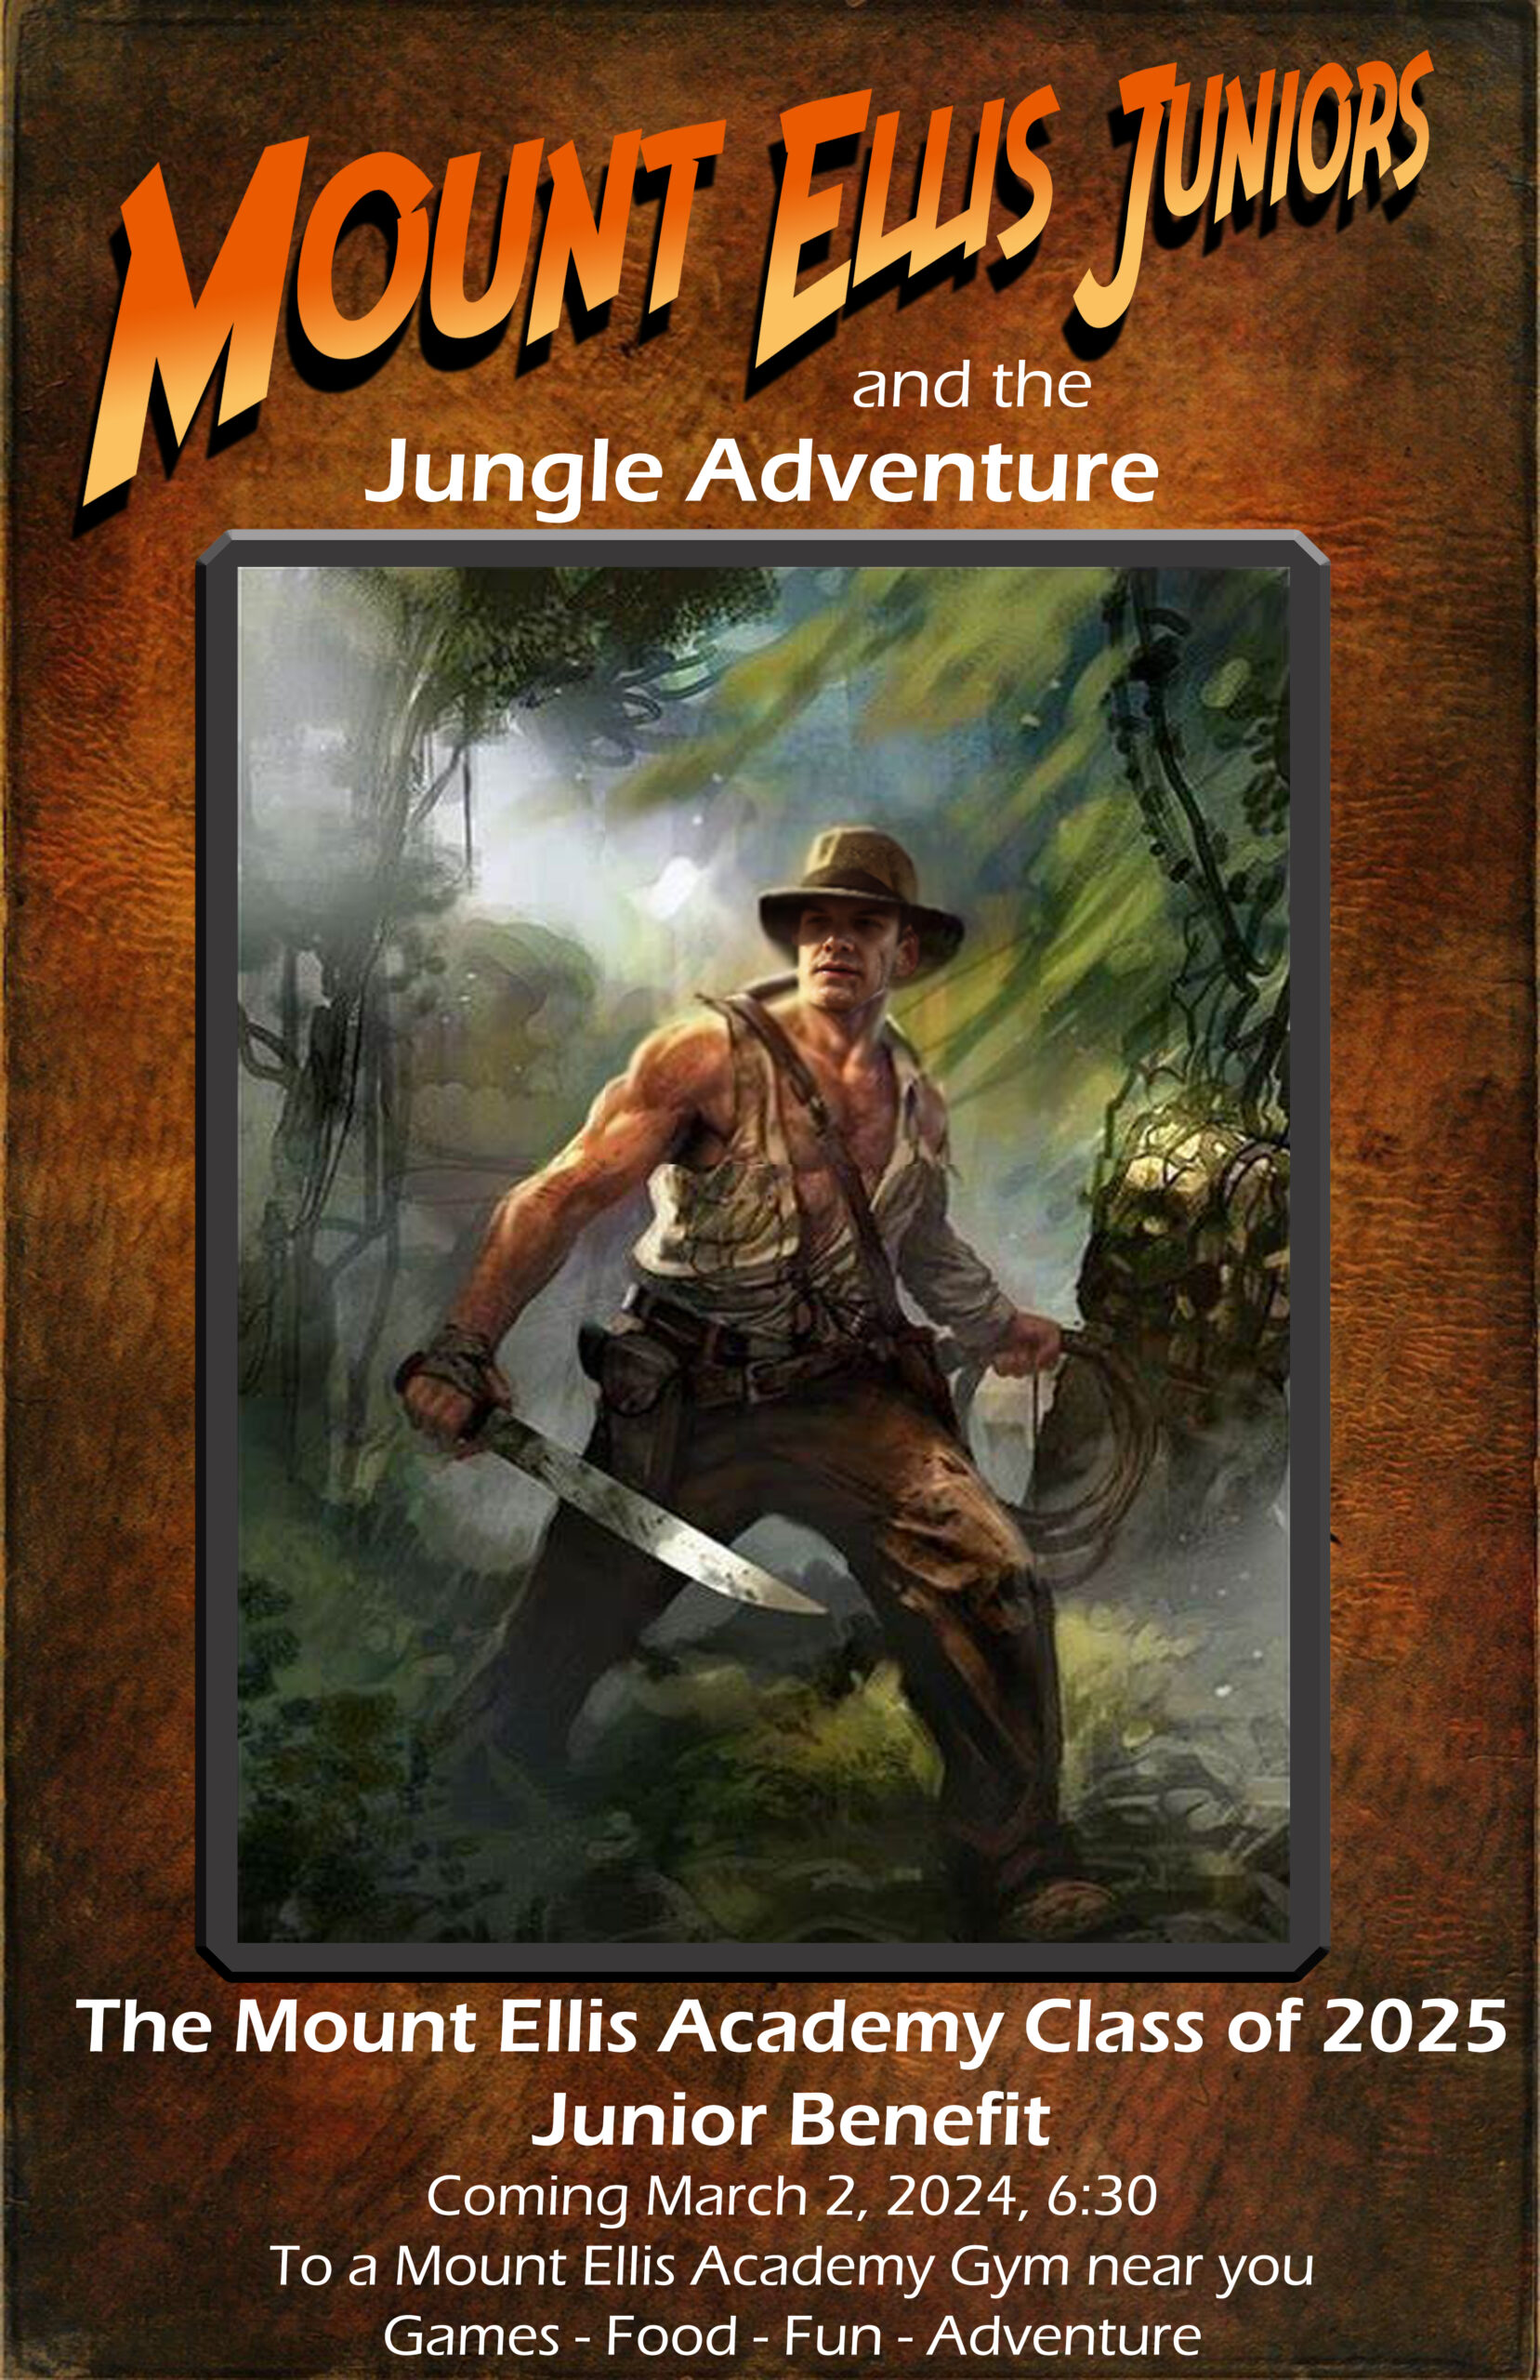 The Jungle Adventure Junior Benefit